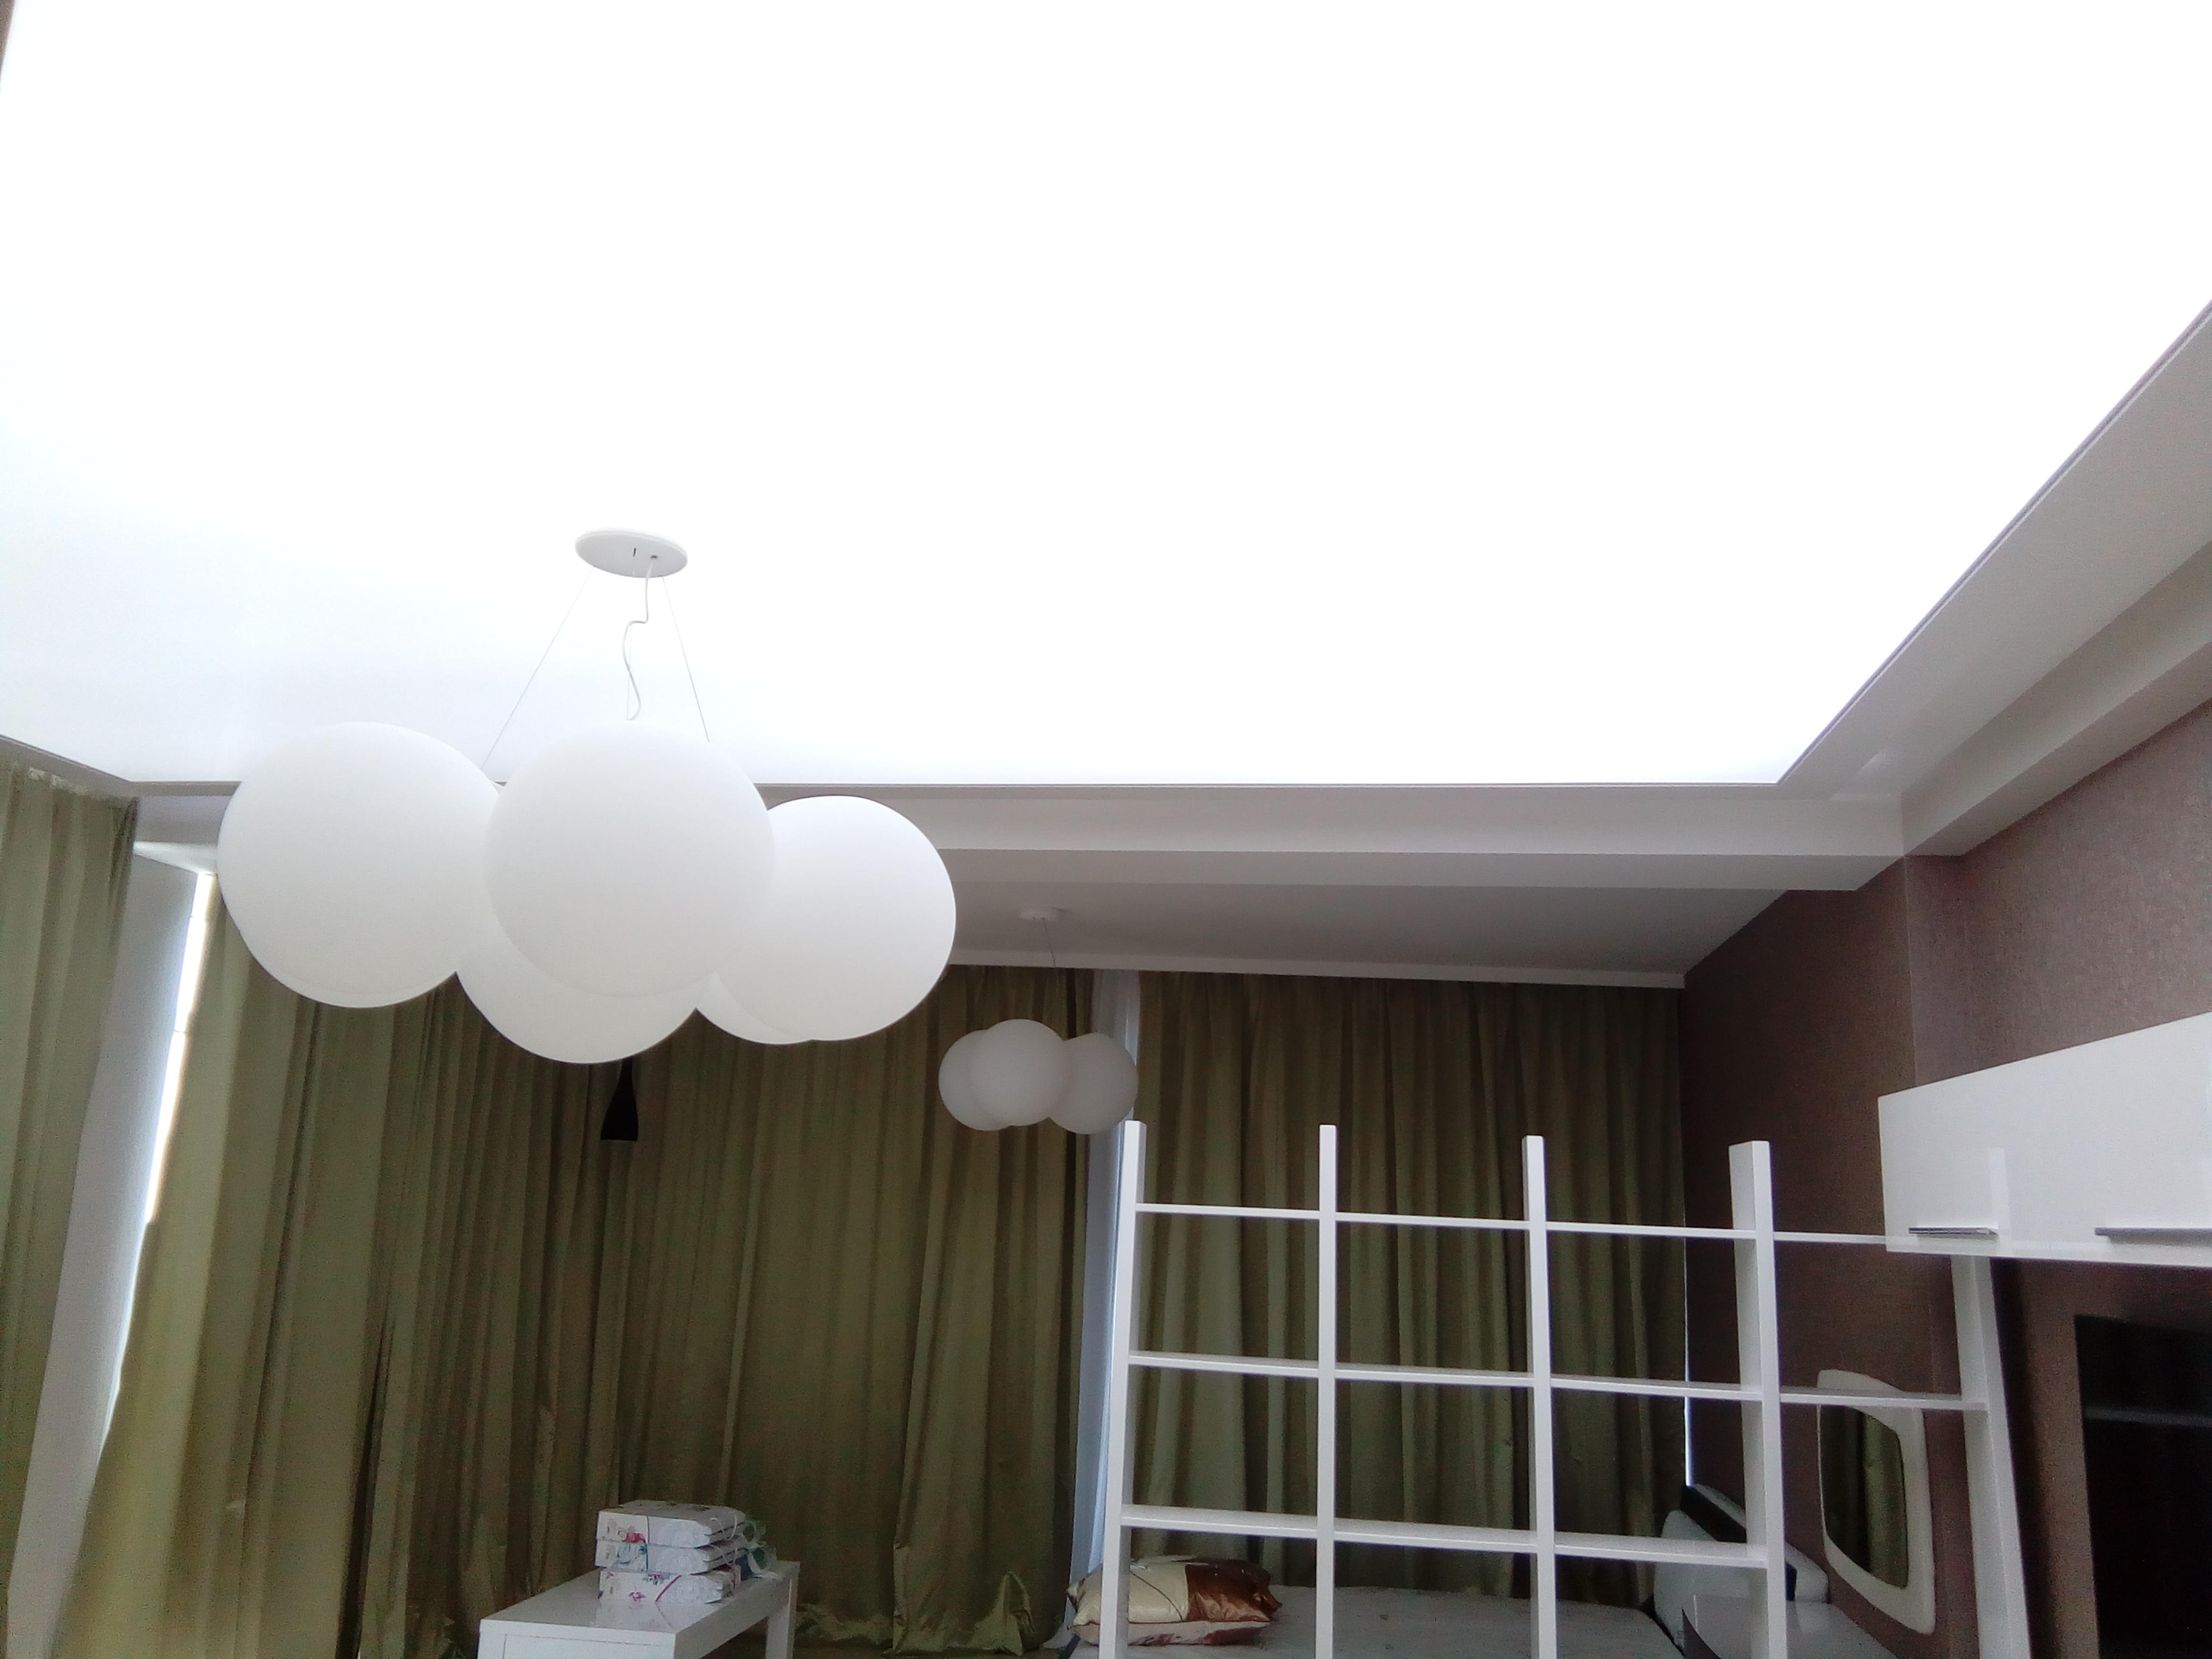   Полупрозрачные потолки Translucent         